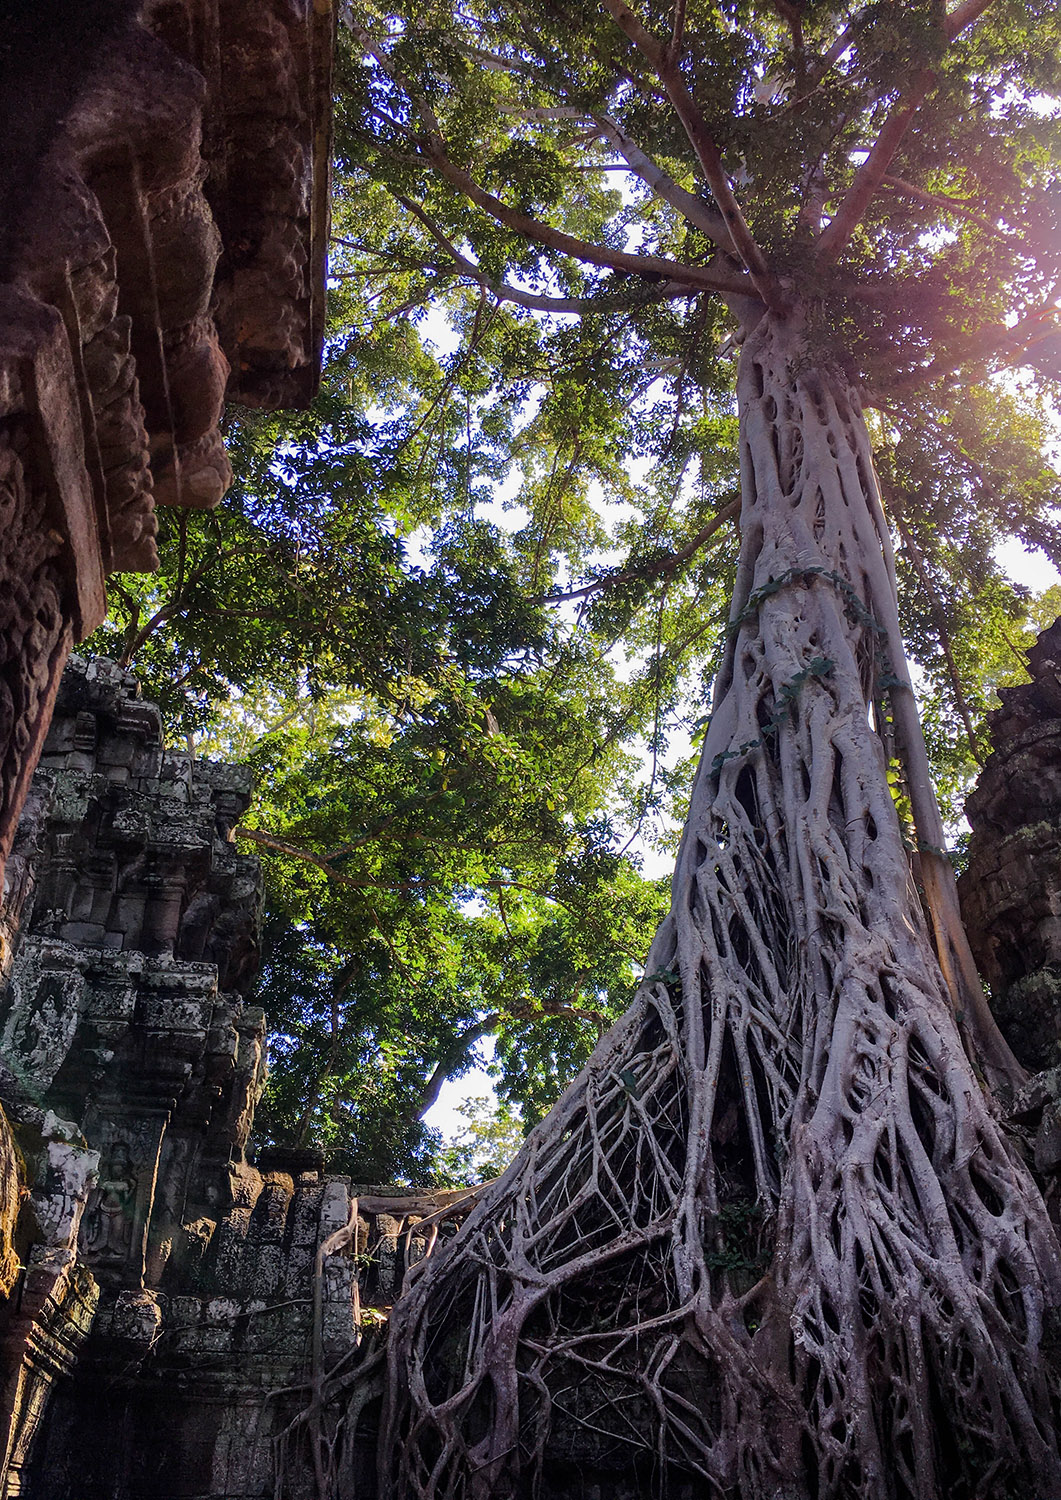 Zwiedzanie Angkor Wat